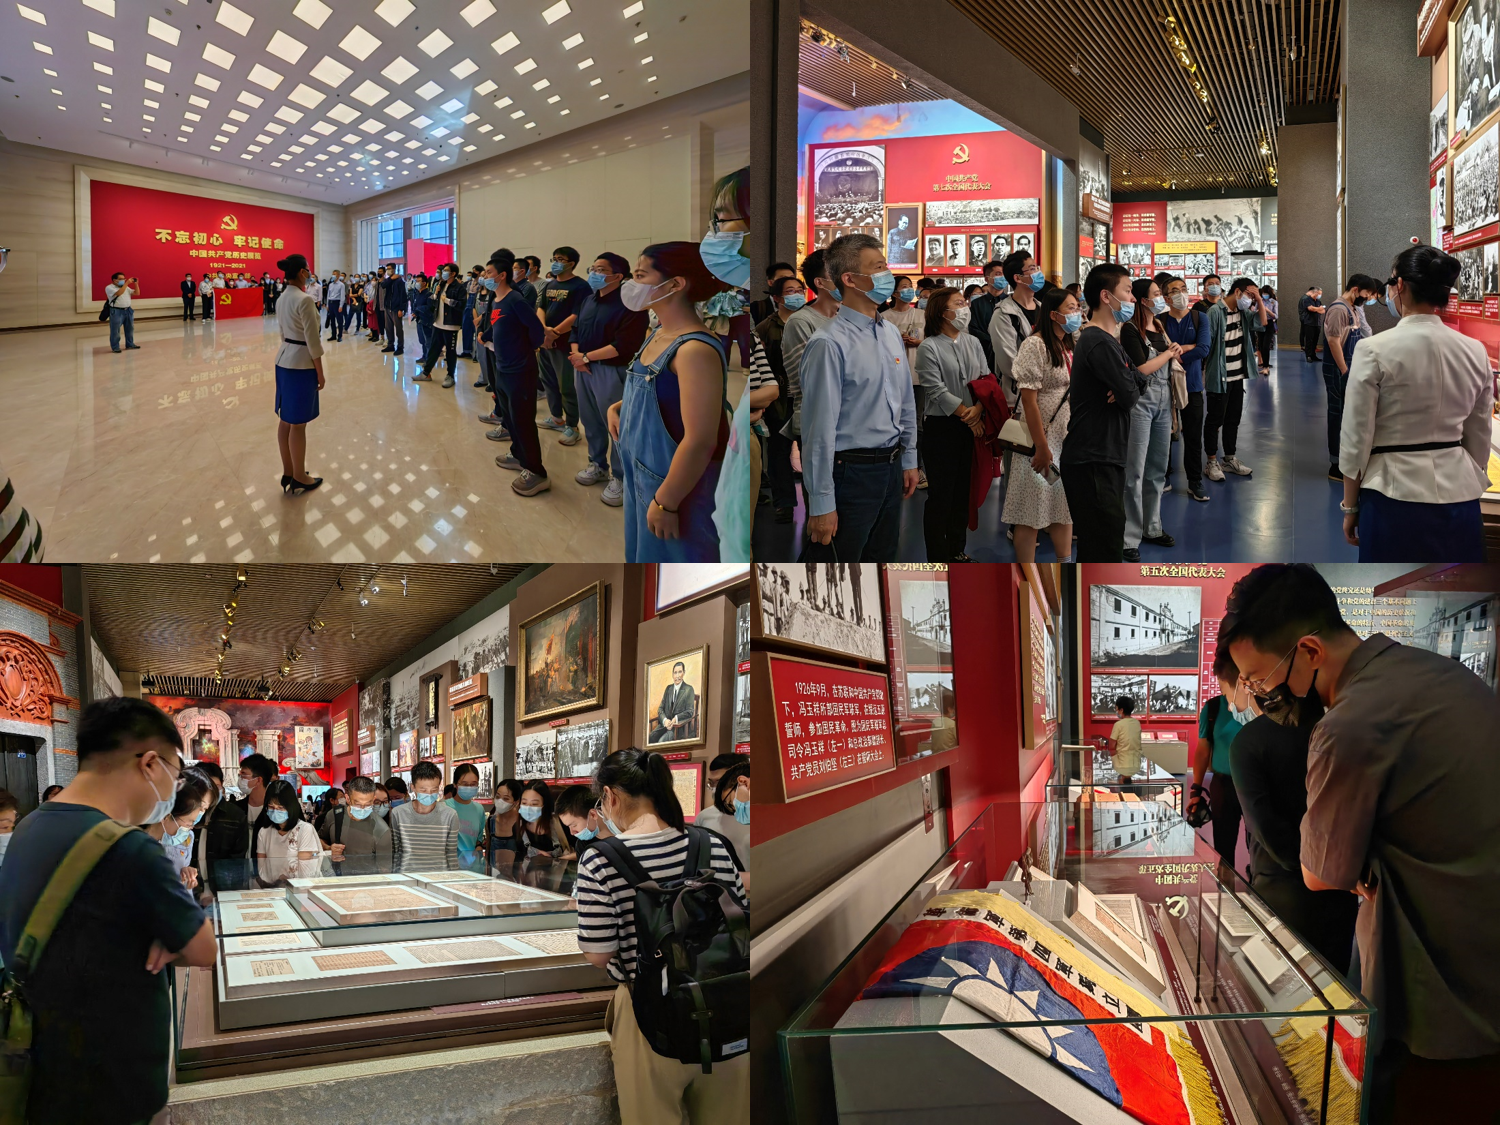 20220927-学员们在中国共产党历史展览馆进行参观学习-研工部-照片.png